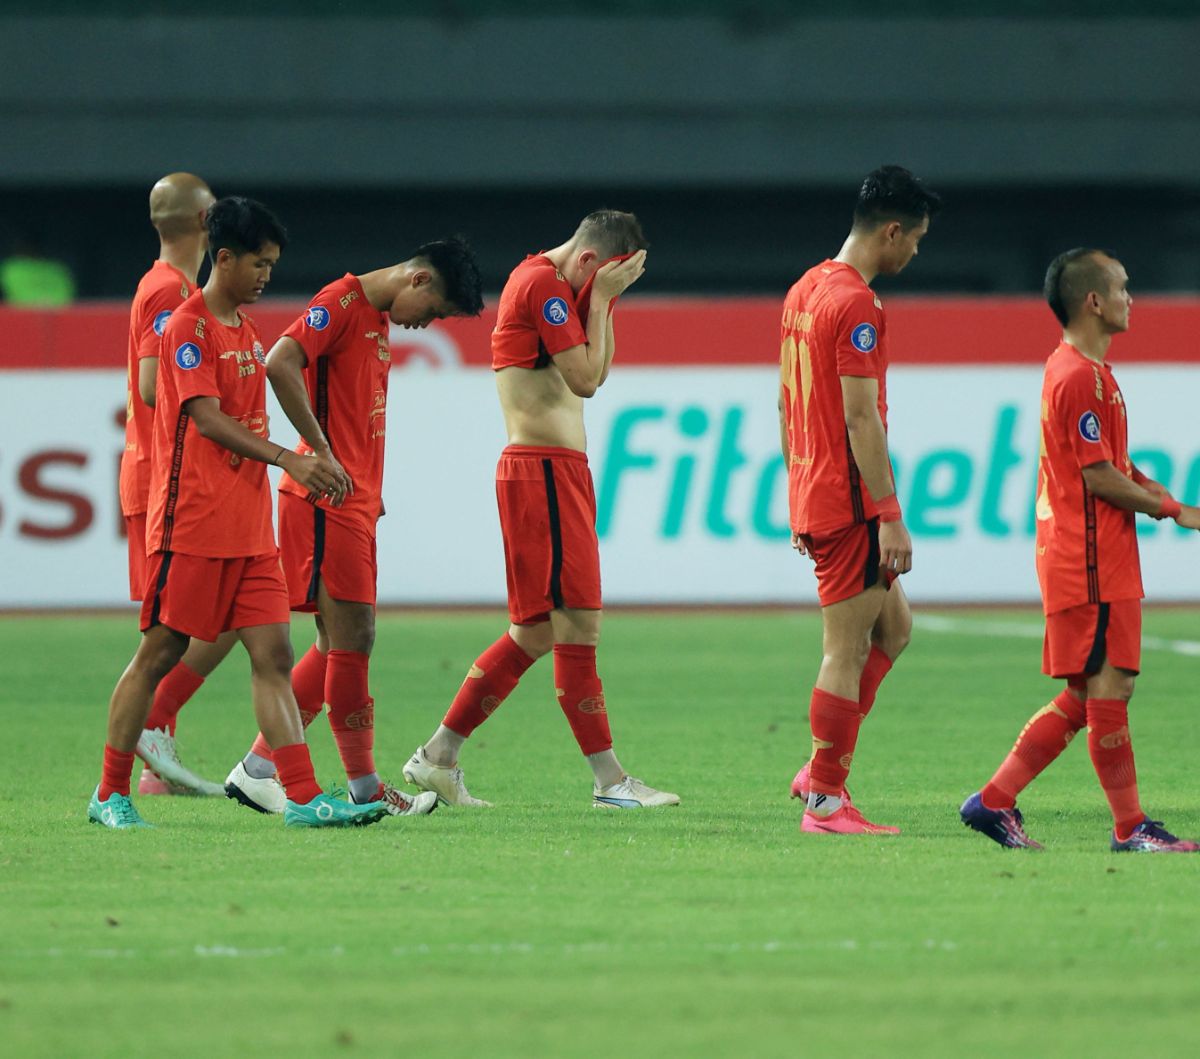 FOTO: Berlangsung Seru dan Diwarnai Kartu Merah, Persija Jakarta Tahan Imbang Bali United 1-1